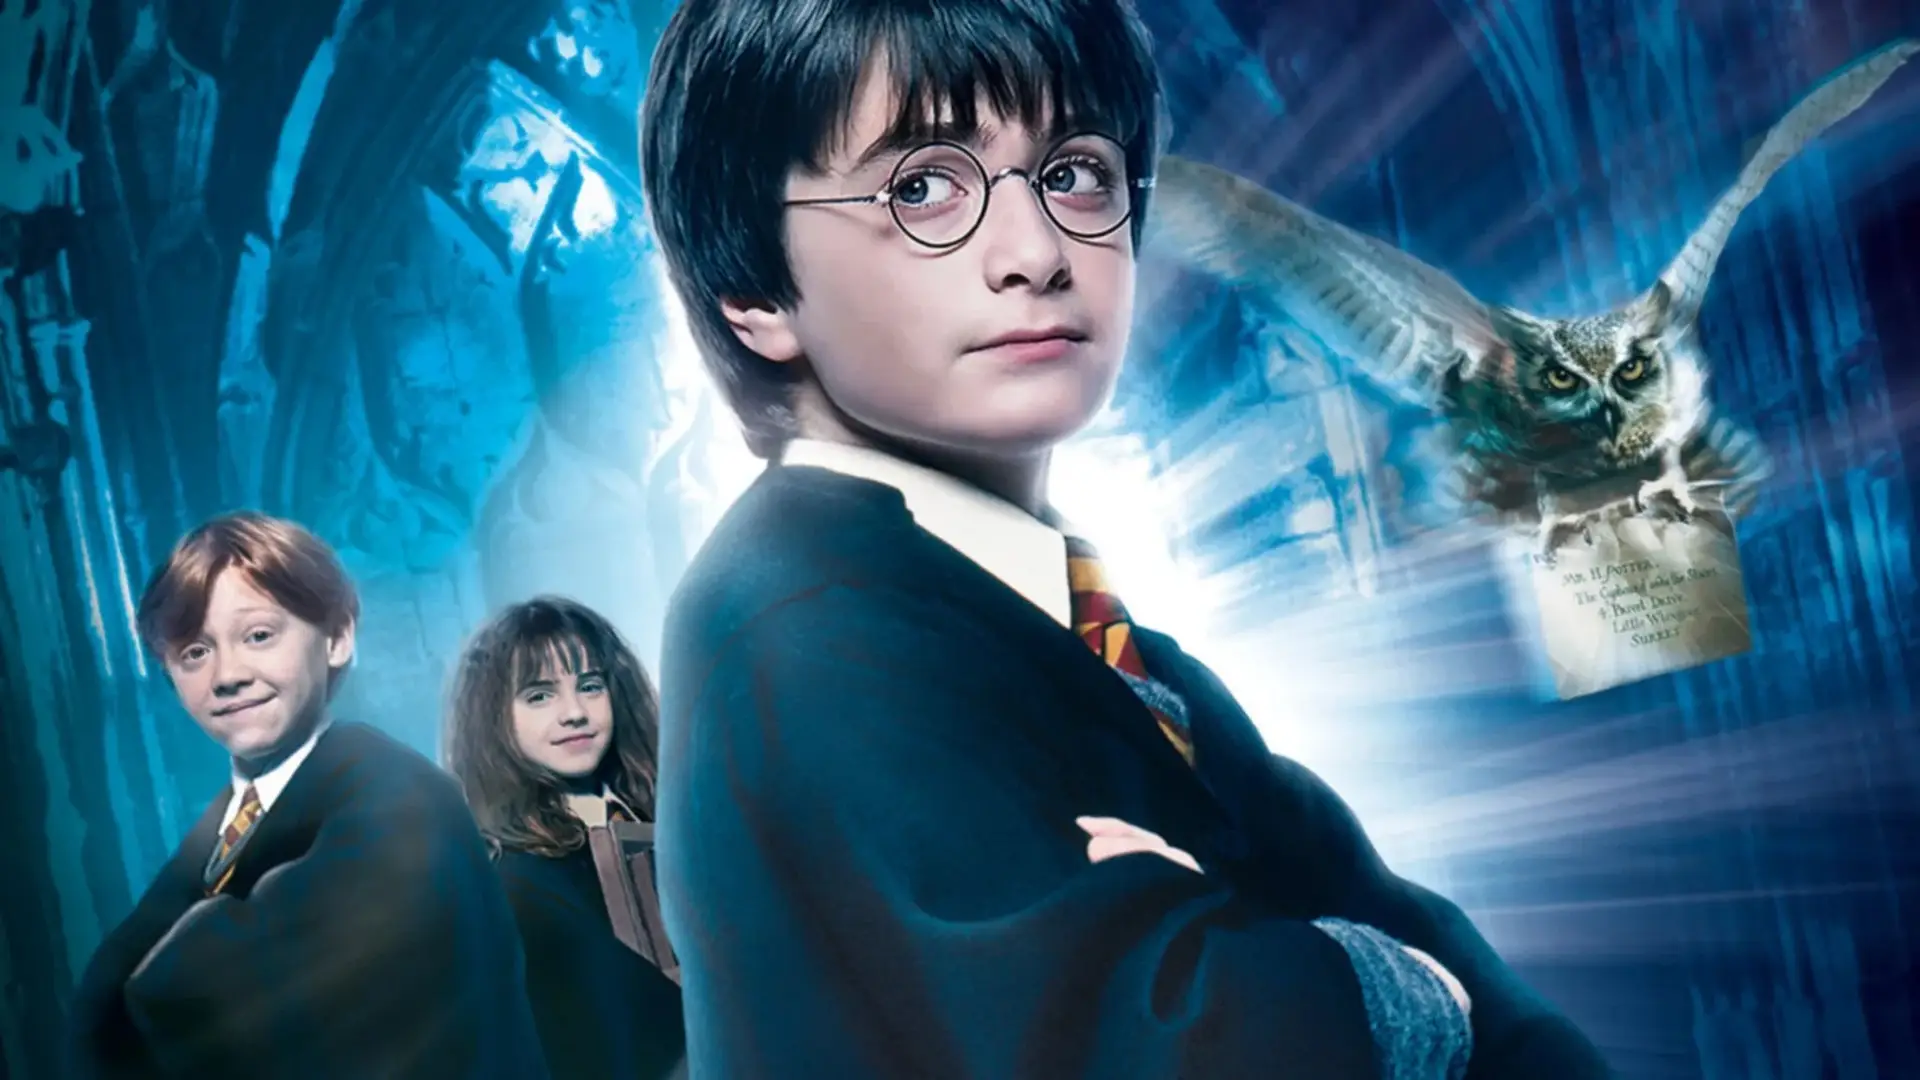 “Harry Potter”: série de televisão confirmada na HBO